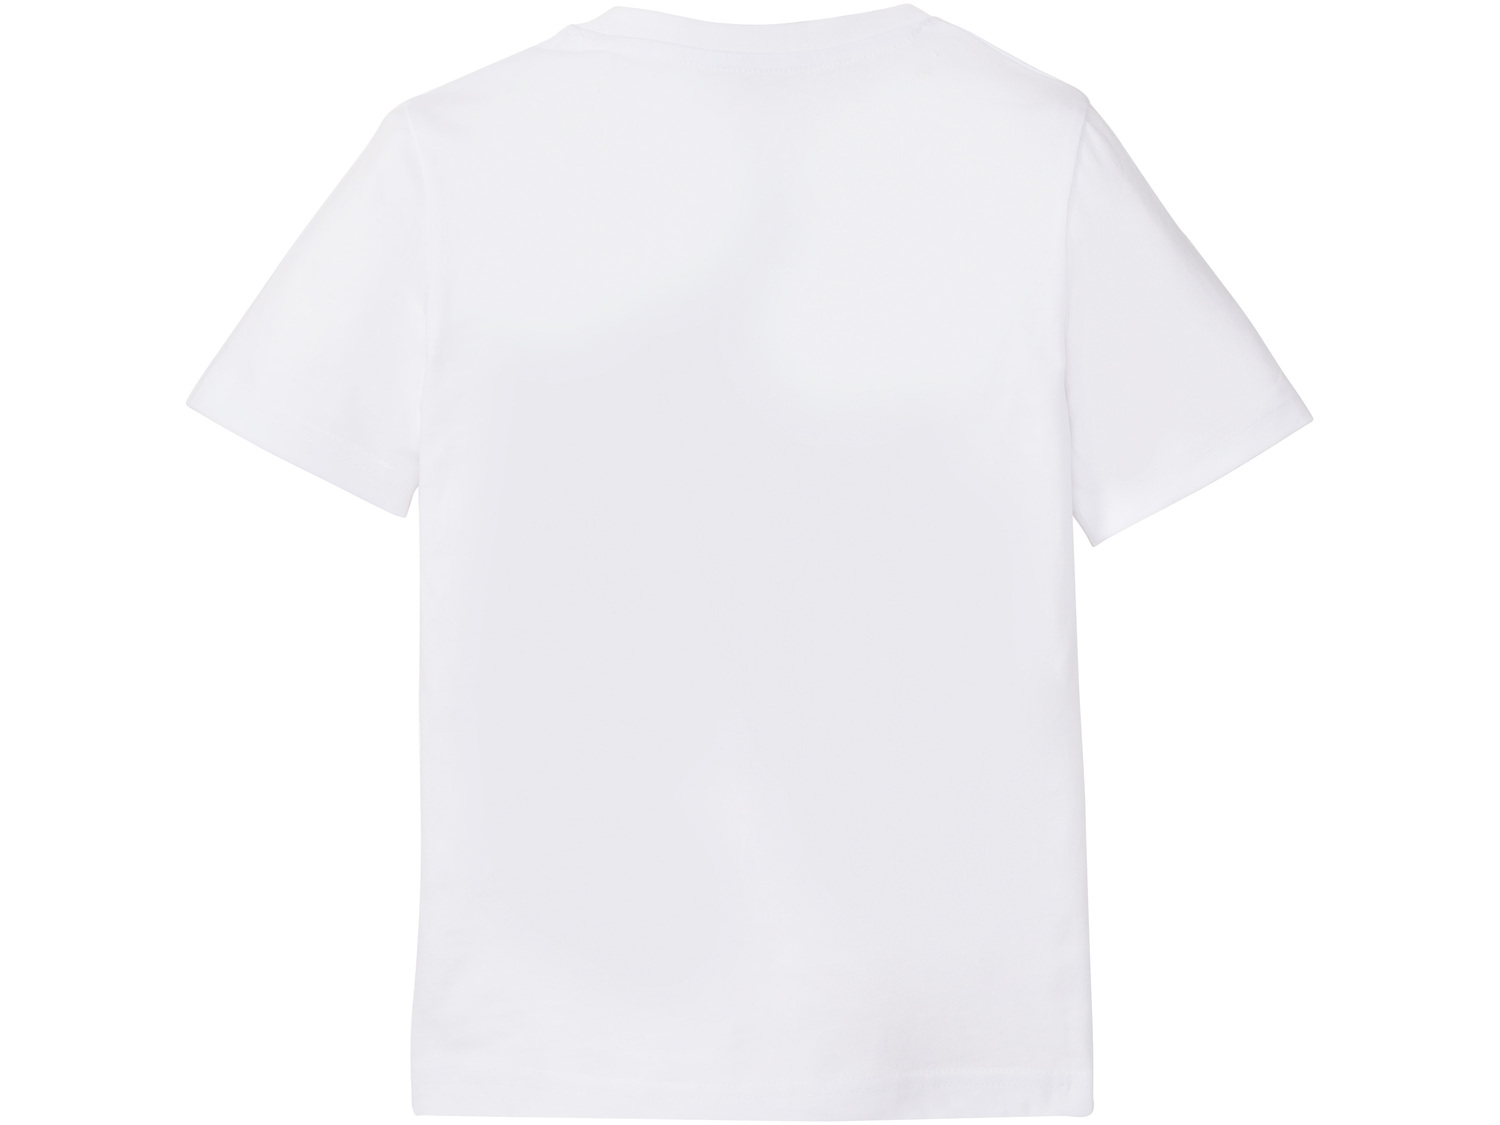 T-shirt chłopięcy Pepperts, cena 9,99 PLN 
- rozmiary: 122-152
- 100% bawełny
Dostępne ...